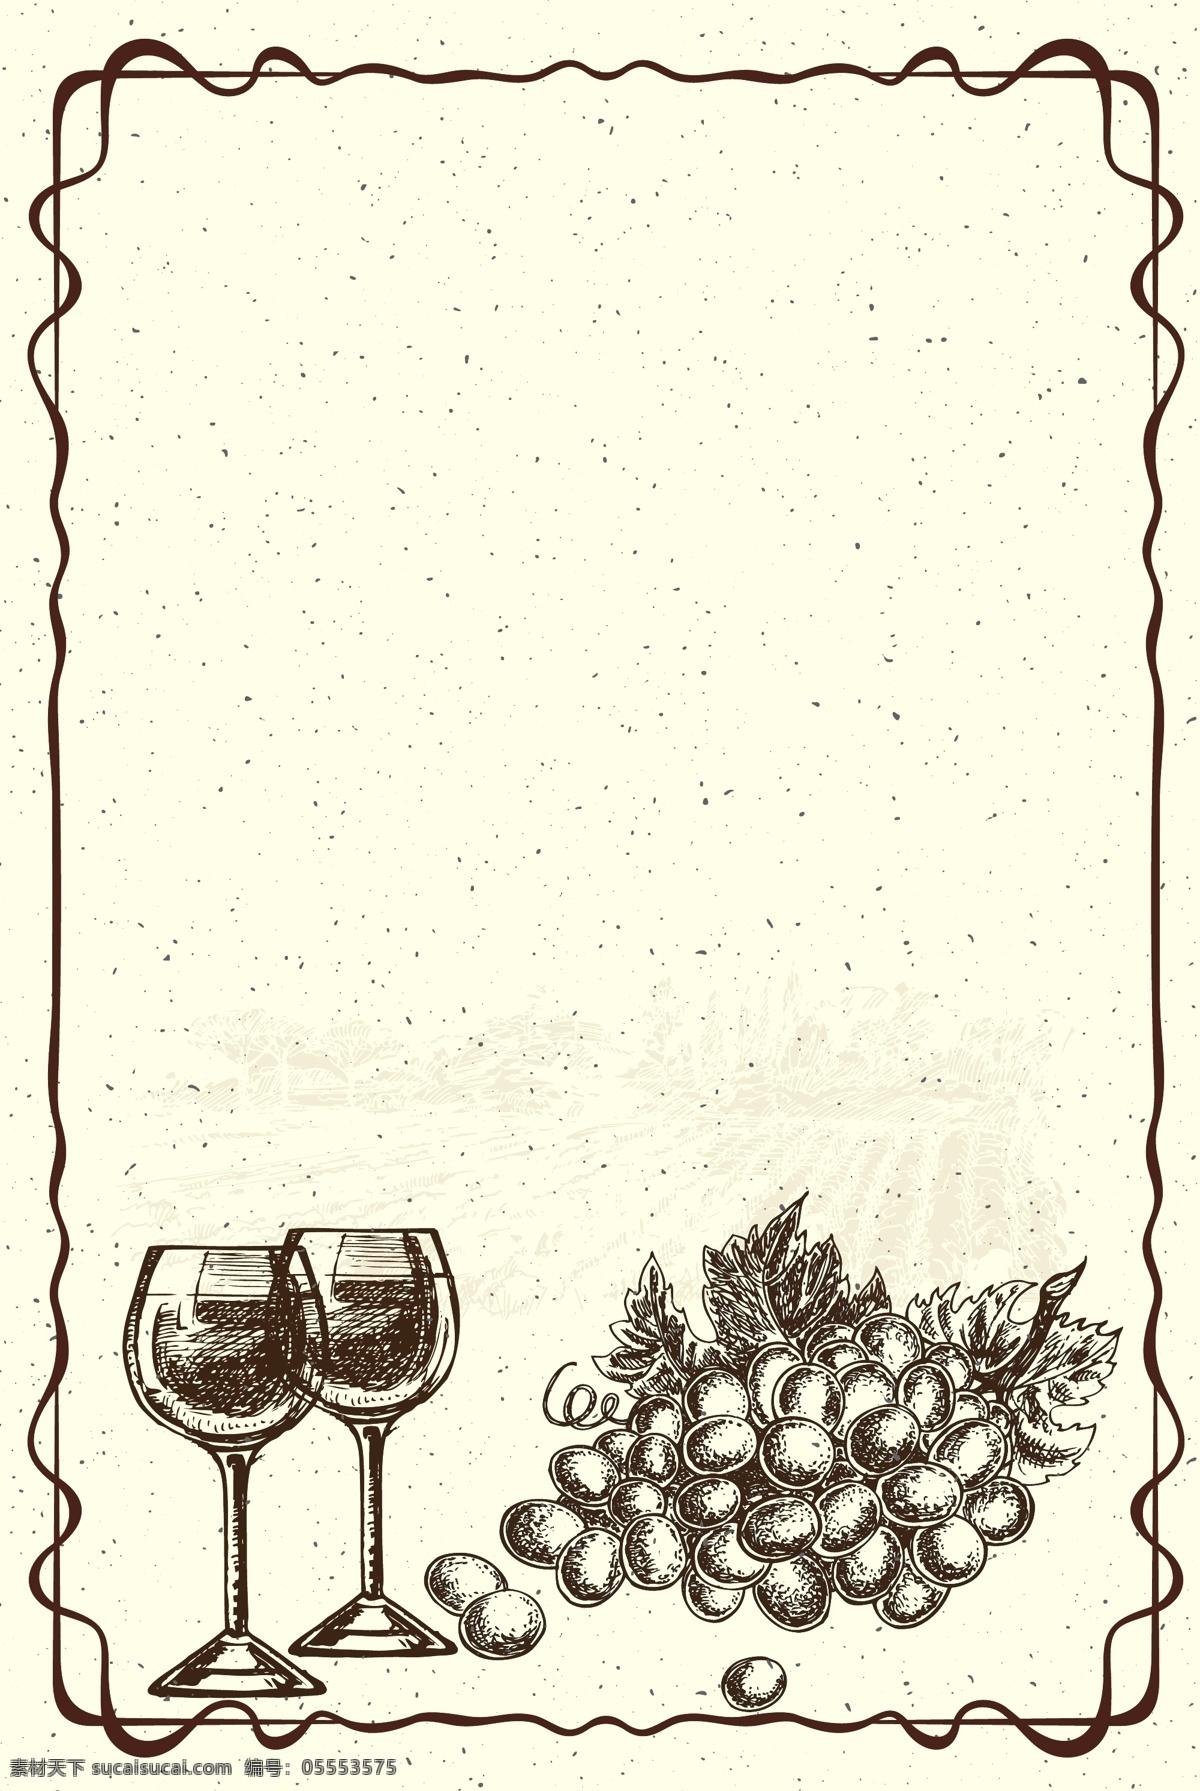 手绘 红酒 葡萄酒 背景 欧式 复古 黑白 彩色 素描 葡萄庄园 红酒杯 高脚杯 复古手绘 葡萄串 木酒桶 酿酒 传统酿酒 欧式边框 欧洲酒庄 海报 矢量素材